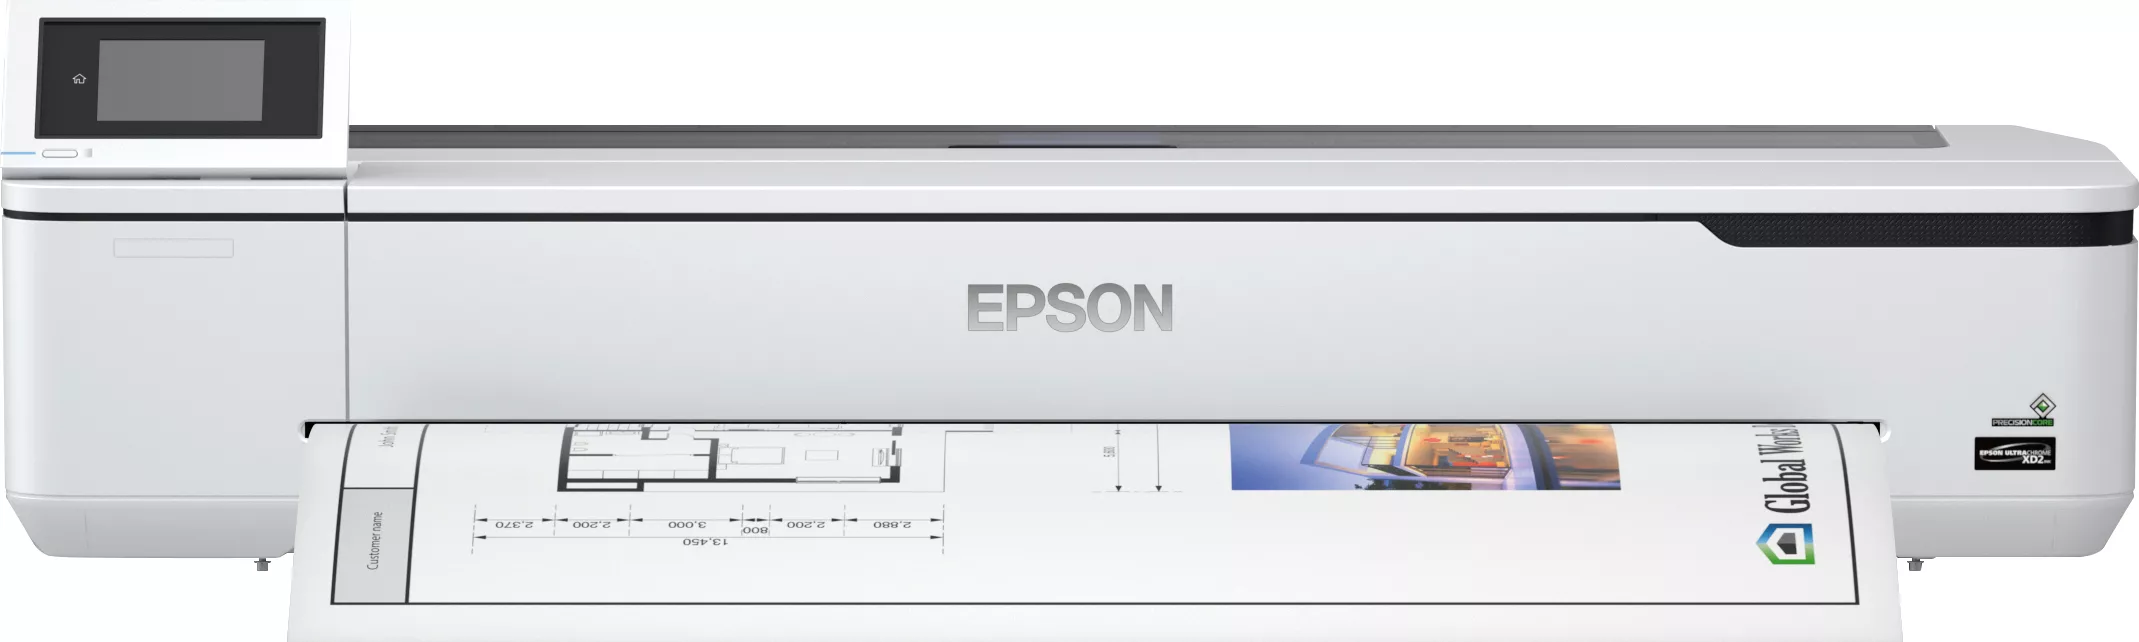 Achat EPSON SureColor SC-T5100N 36p large-format printer colour et autres produits de la marque Epson